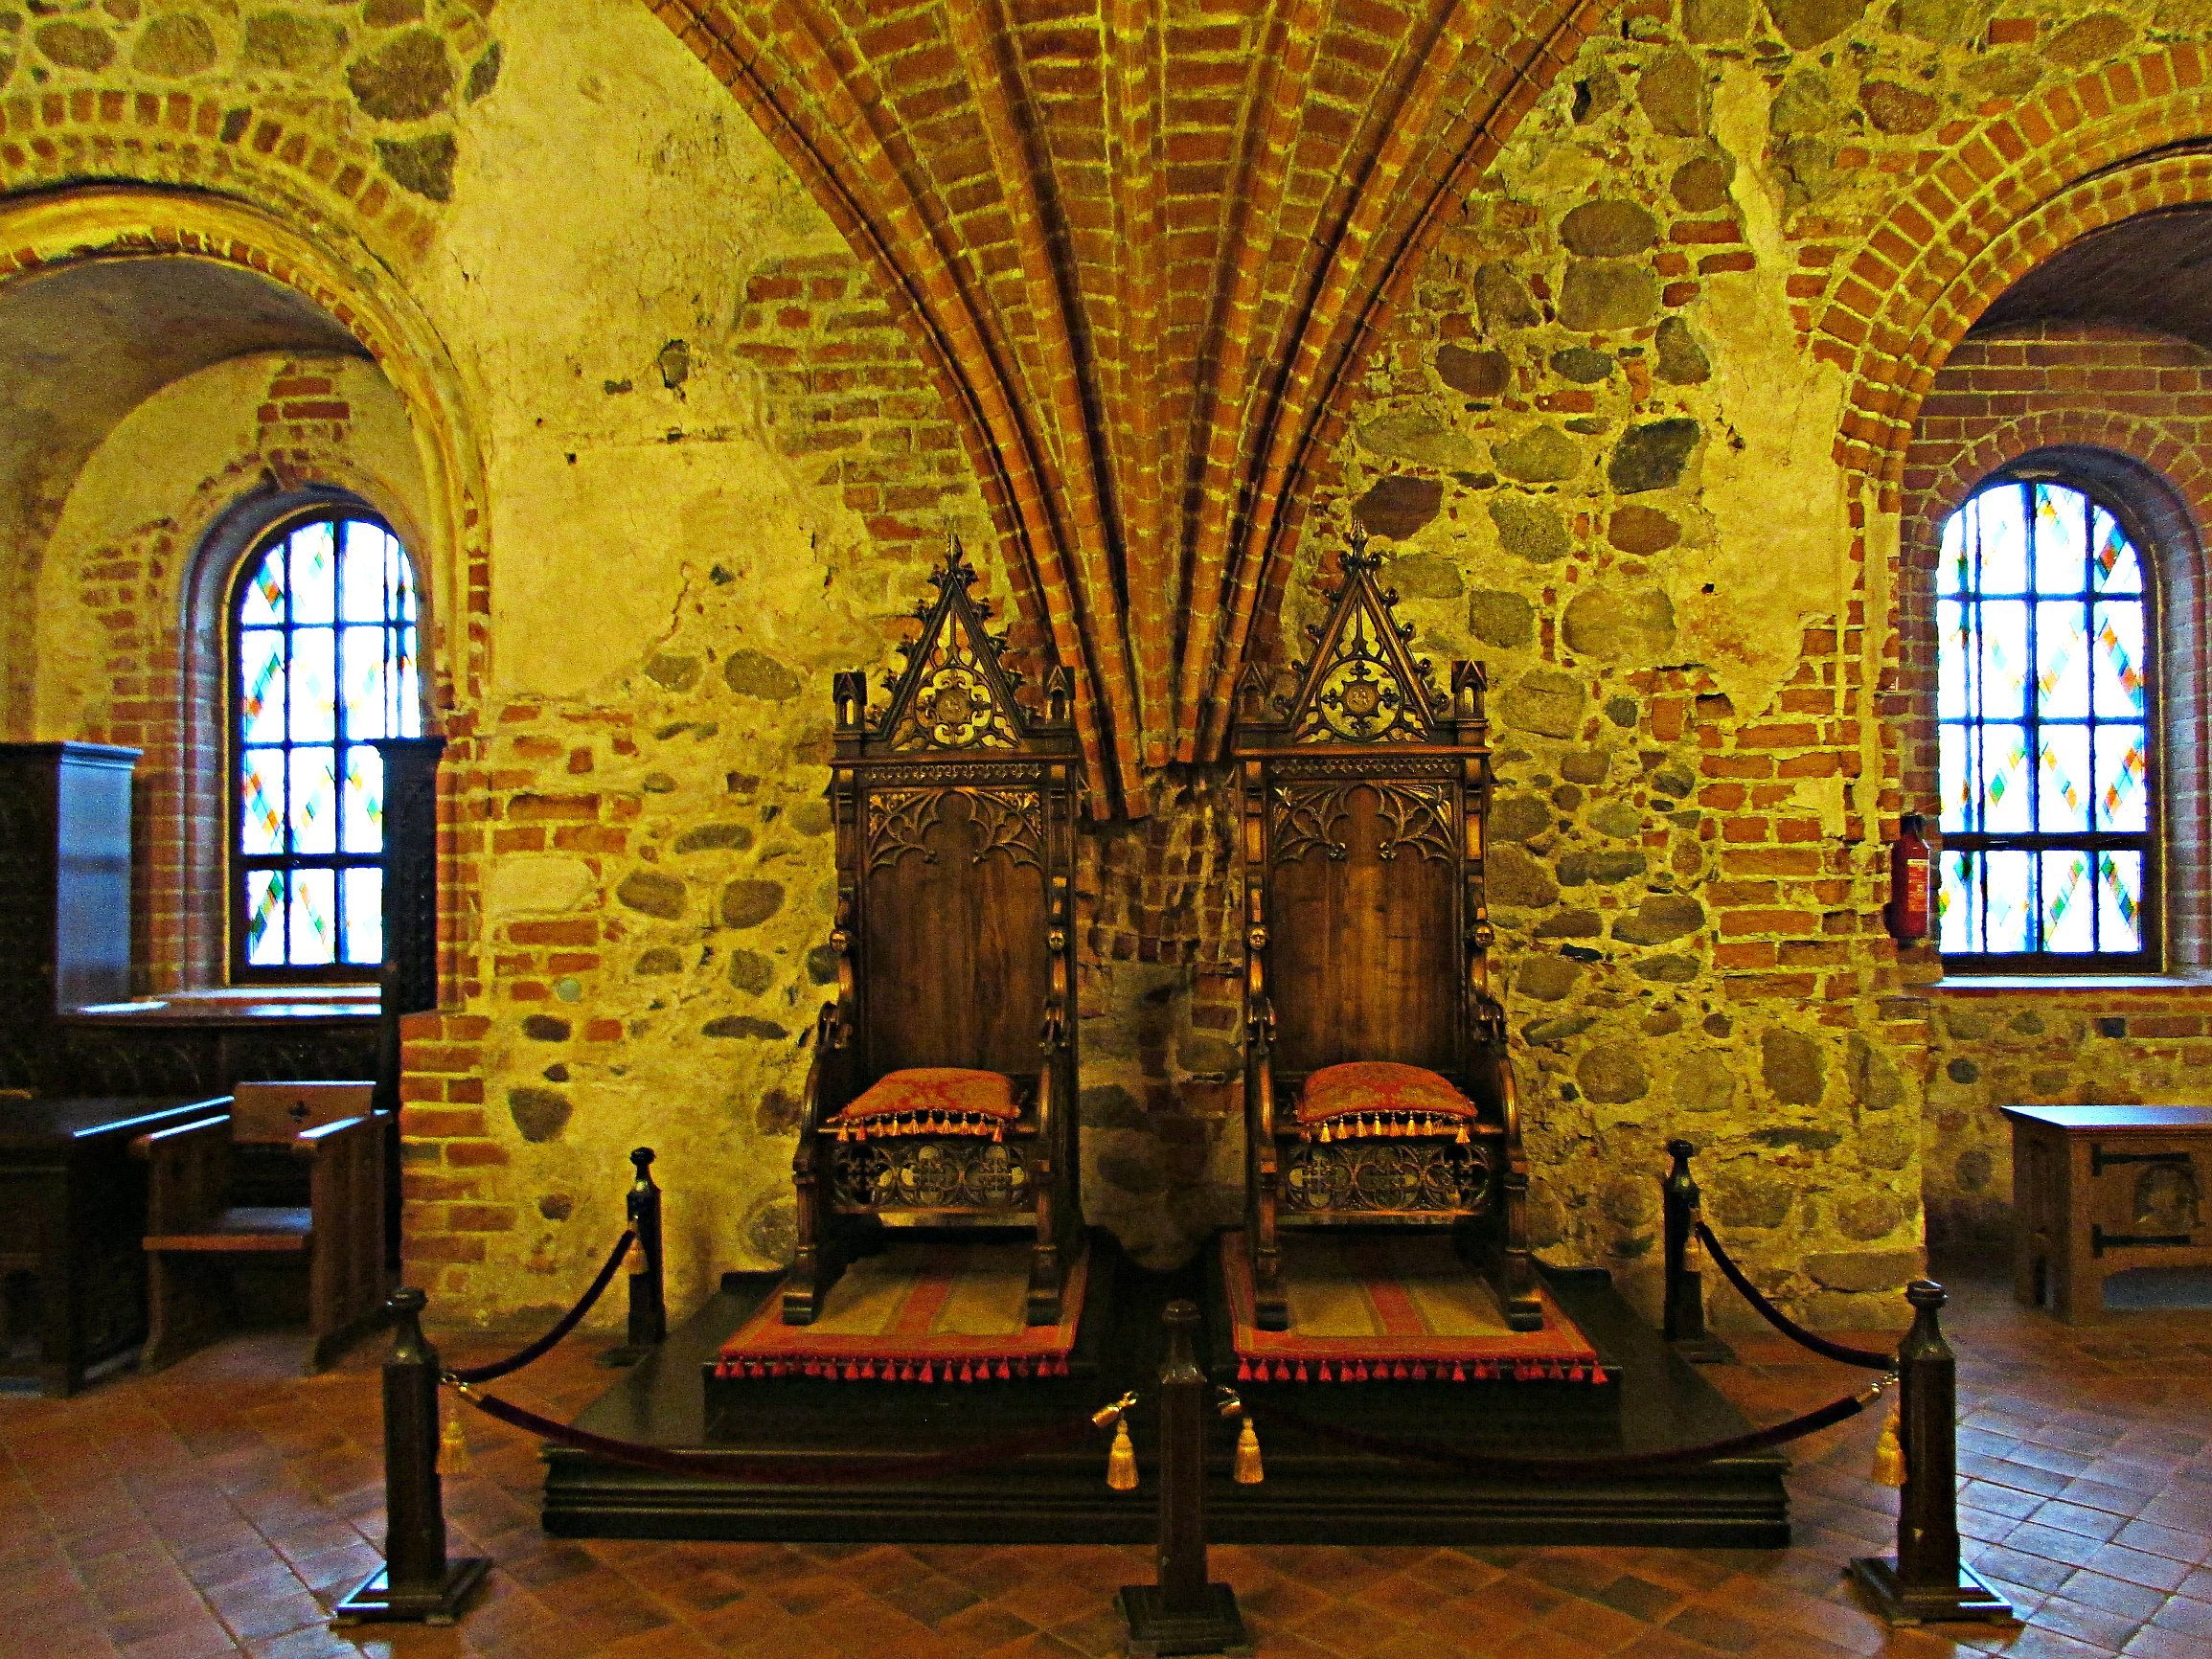 Внутри буда. Средневековый замок внутри Тронный зал. Мейдерслот замок интерьер. Тронный зал в замке средневековья. Замок средневековья внутри Тронный зал.